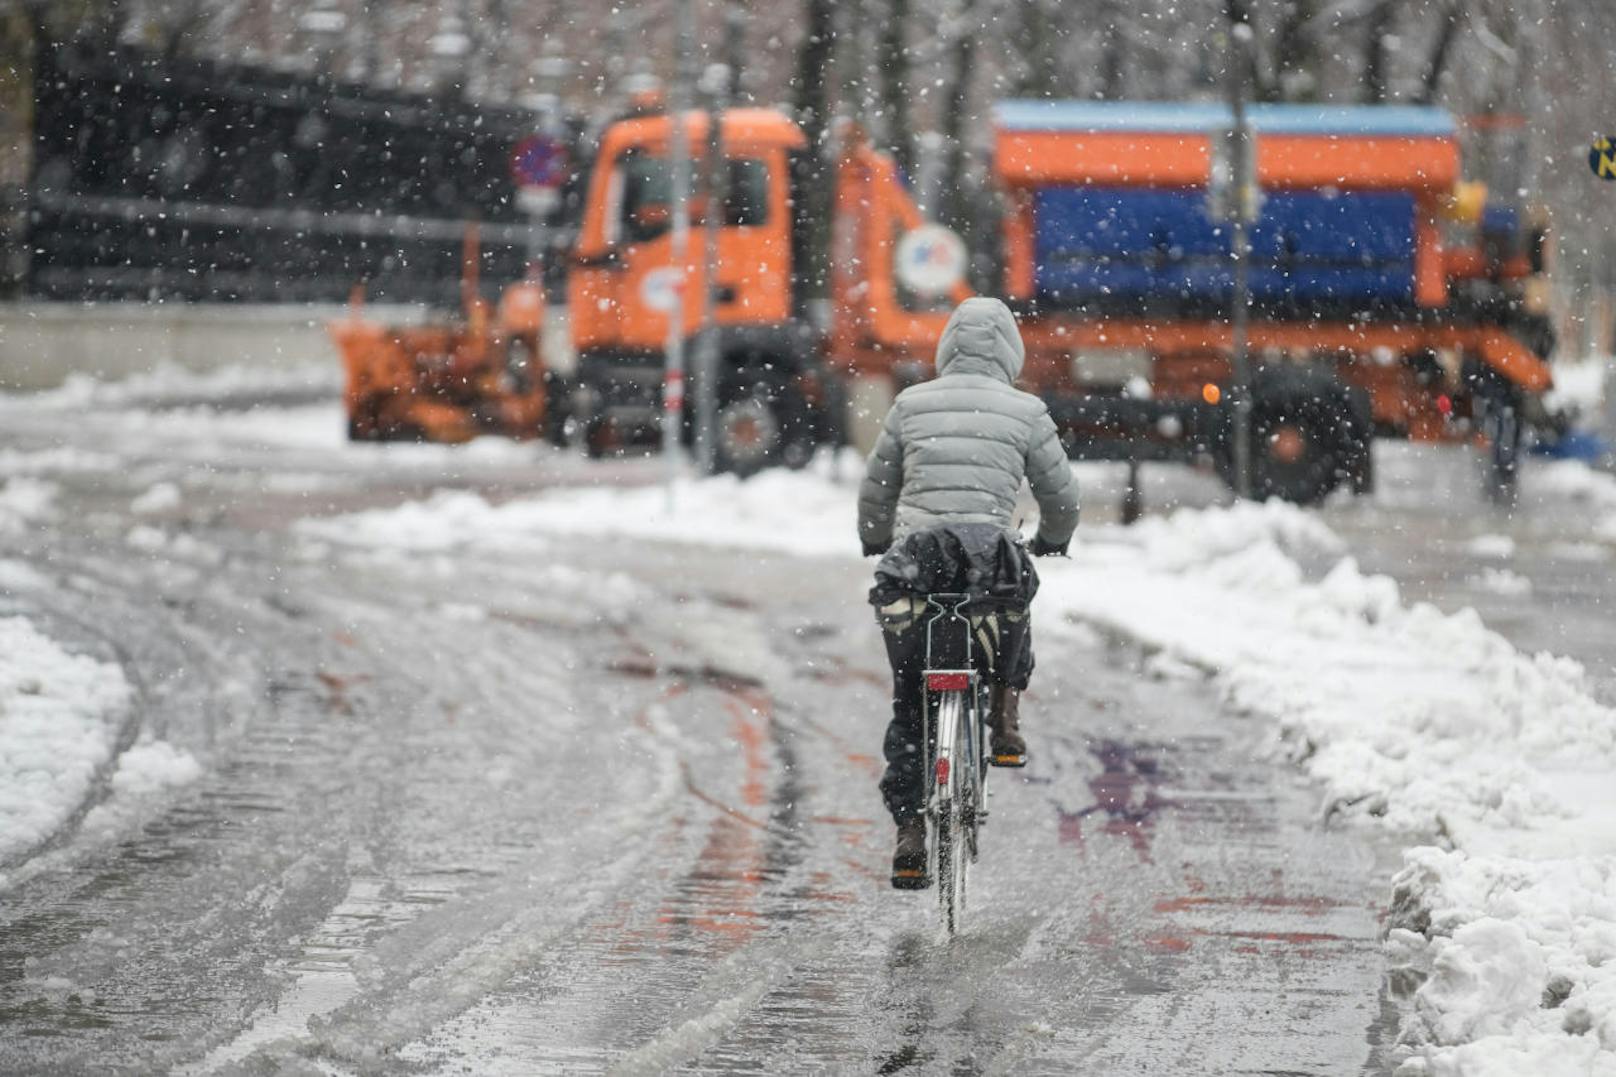 Erster Schneefall der Saison im Winter 2017 in Wien Ende November. Am Freitag (12. Jänner 2018) könnte es auch in der Bundeshauptstadt wieder schneien. <b>Mehr Infos: </b> <a href="https://www.heute.at/oesterreich/news/story/Wetter-oesterreich-KW2-2018-Schnee-Regen-Wien-Niederoesterreich-42779030" target="_blank">Jetzt kommt der Schnee bis nach Wien</a>